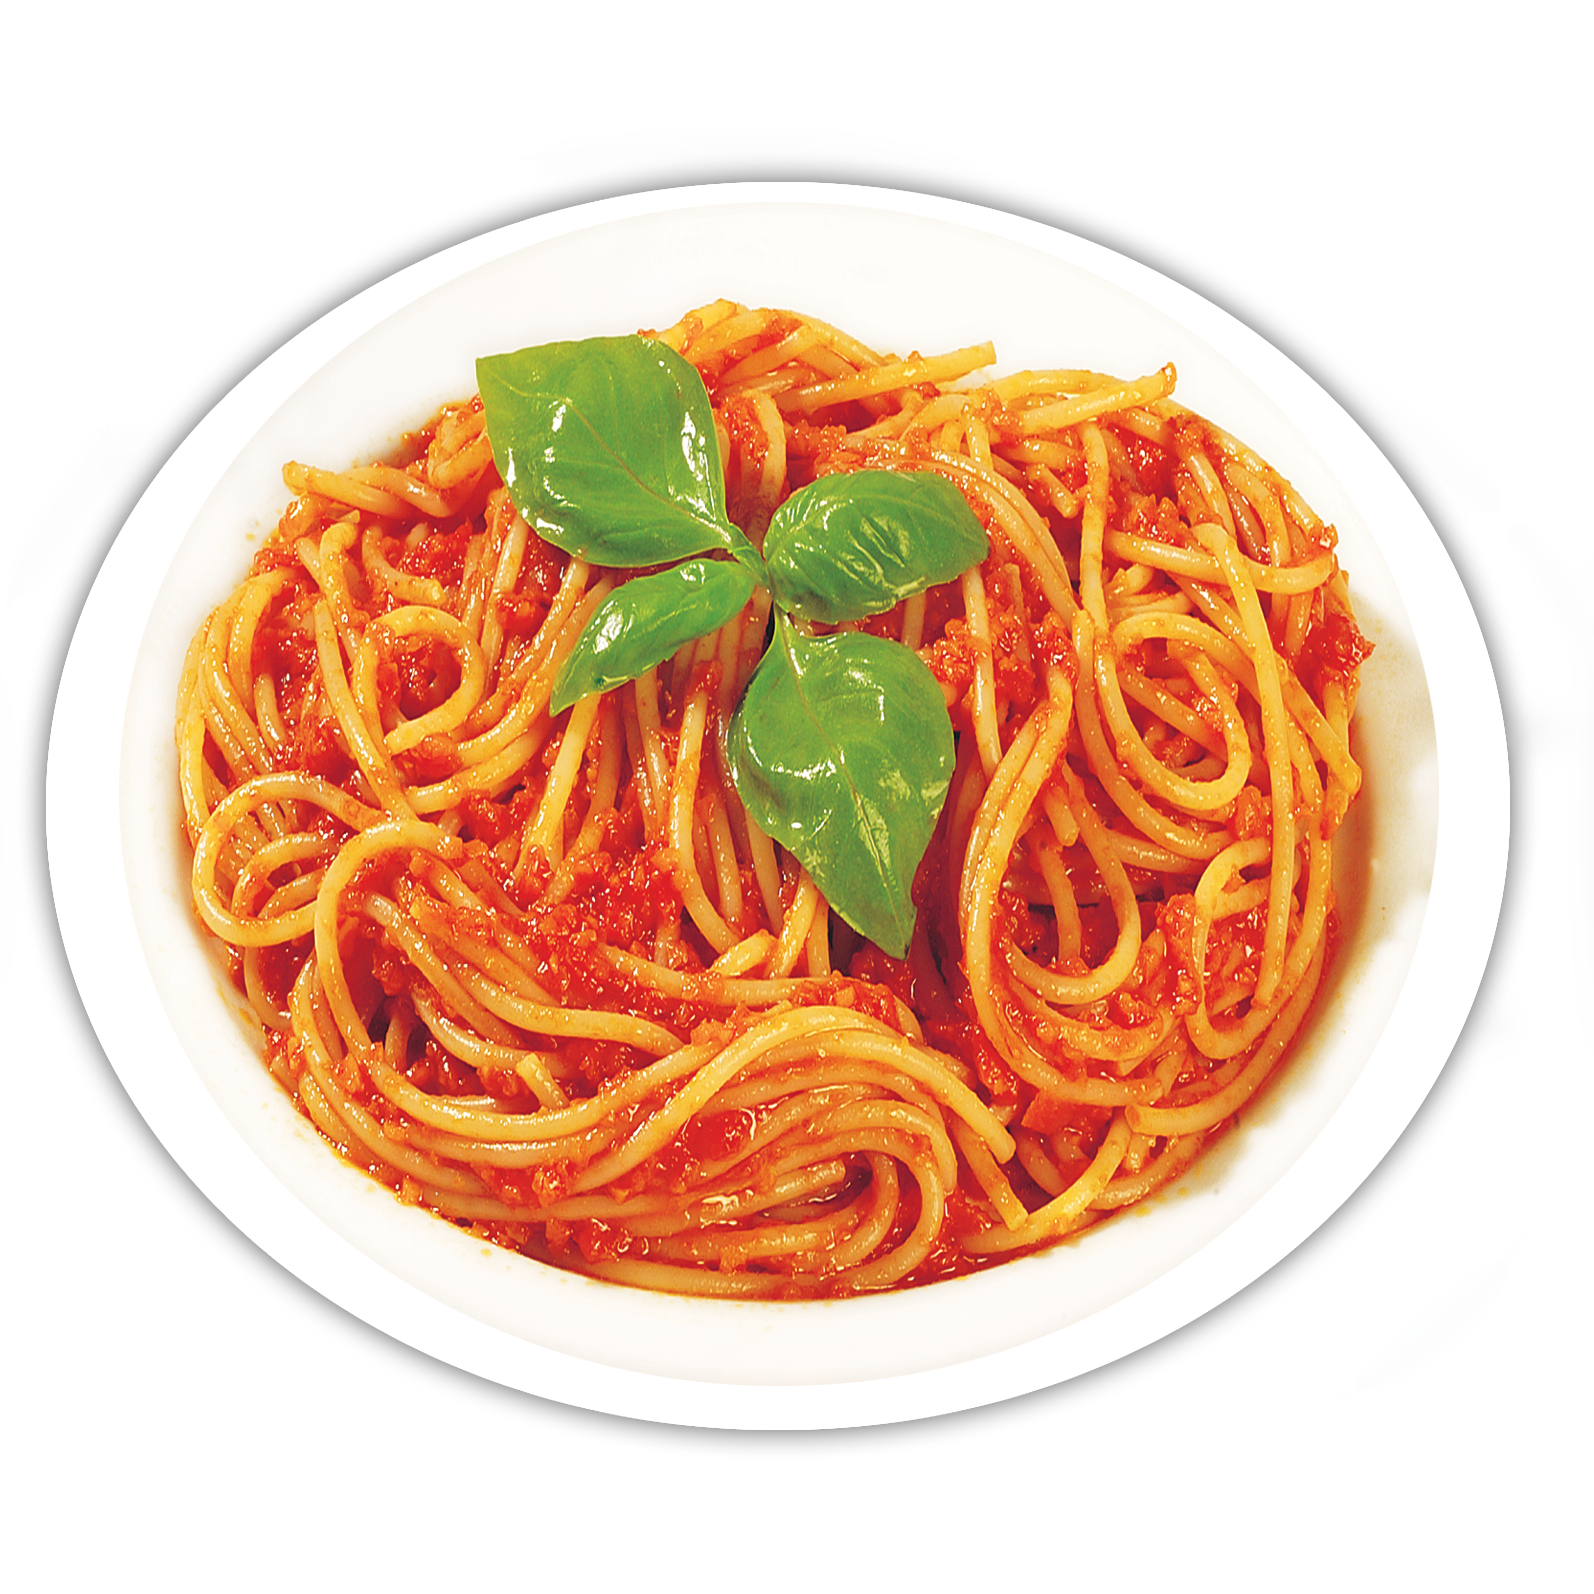 pasta clipart plate spaghetti